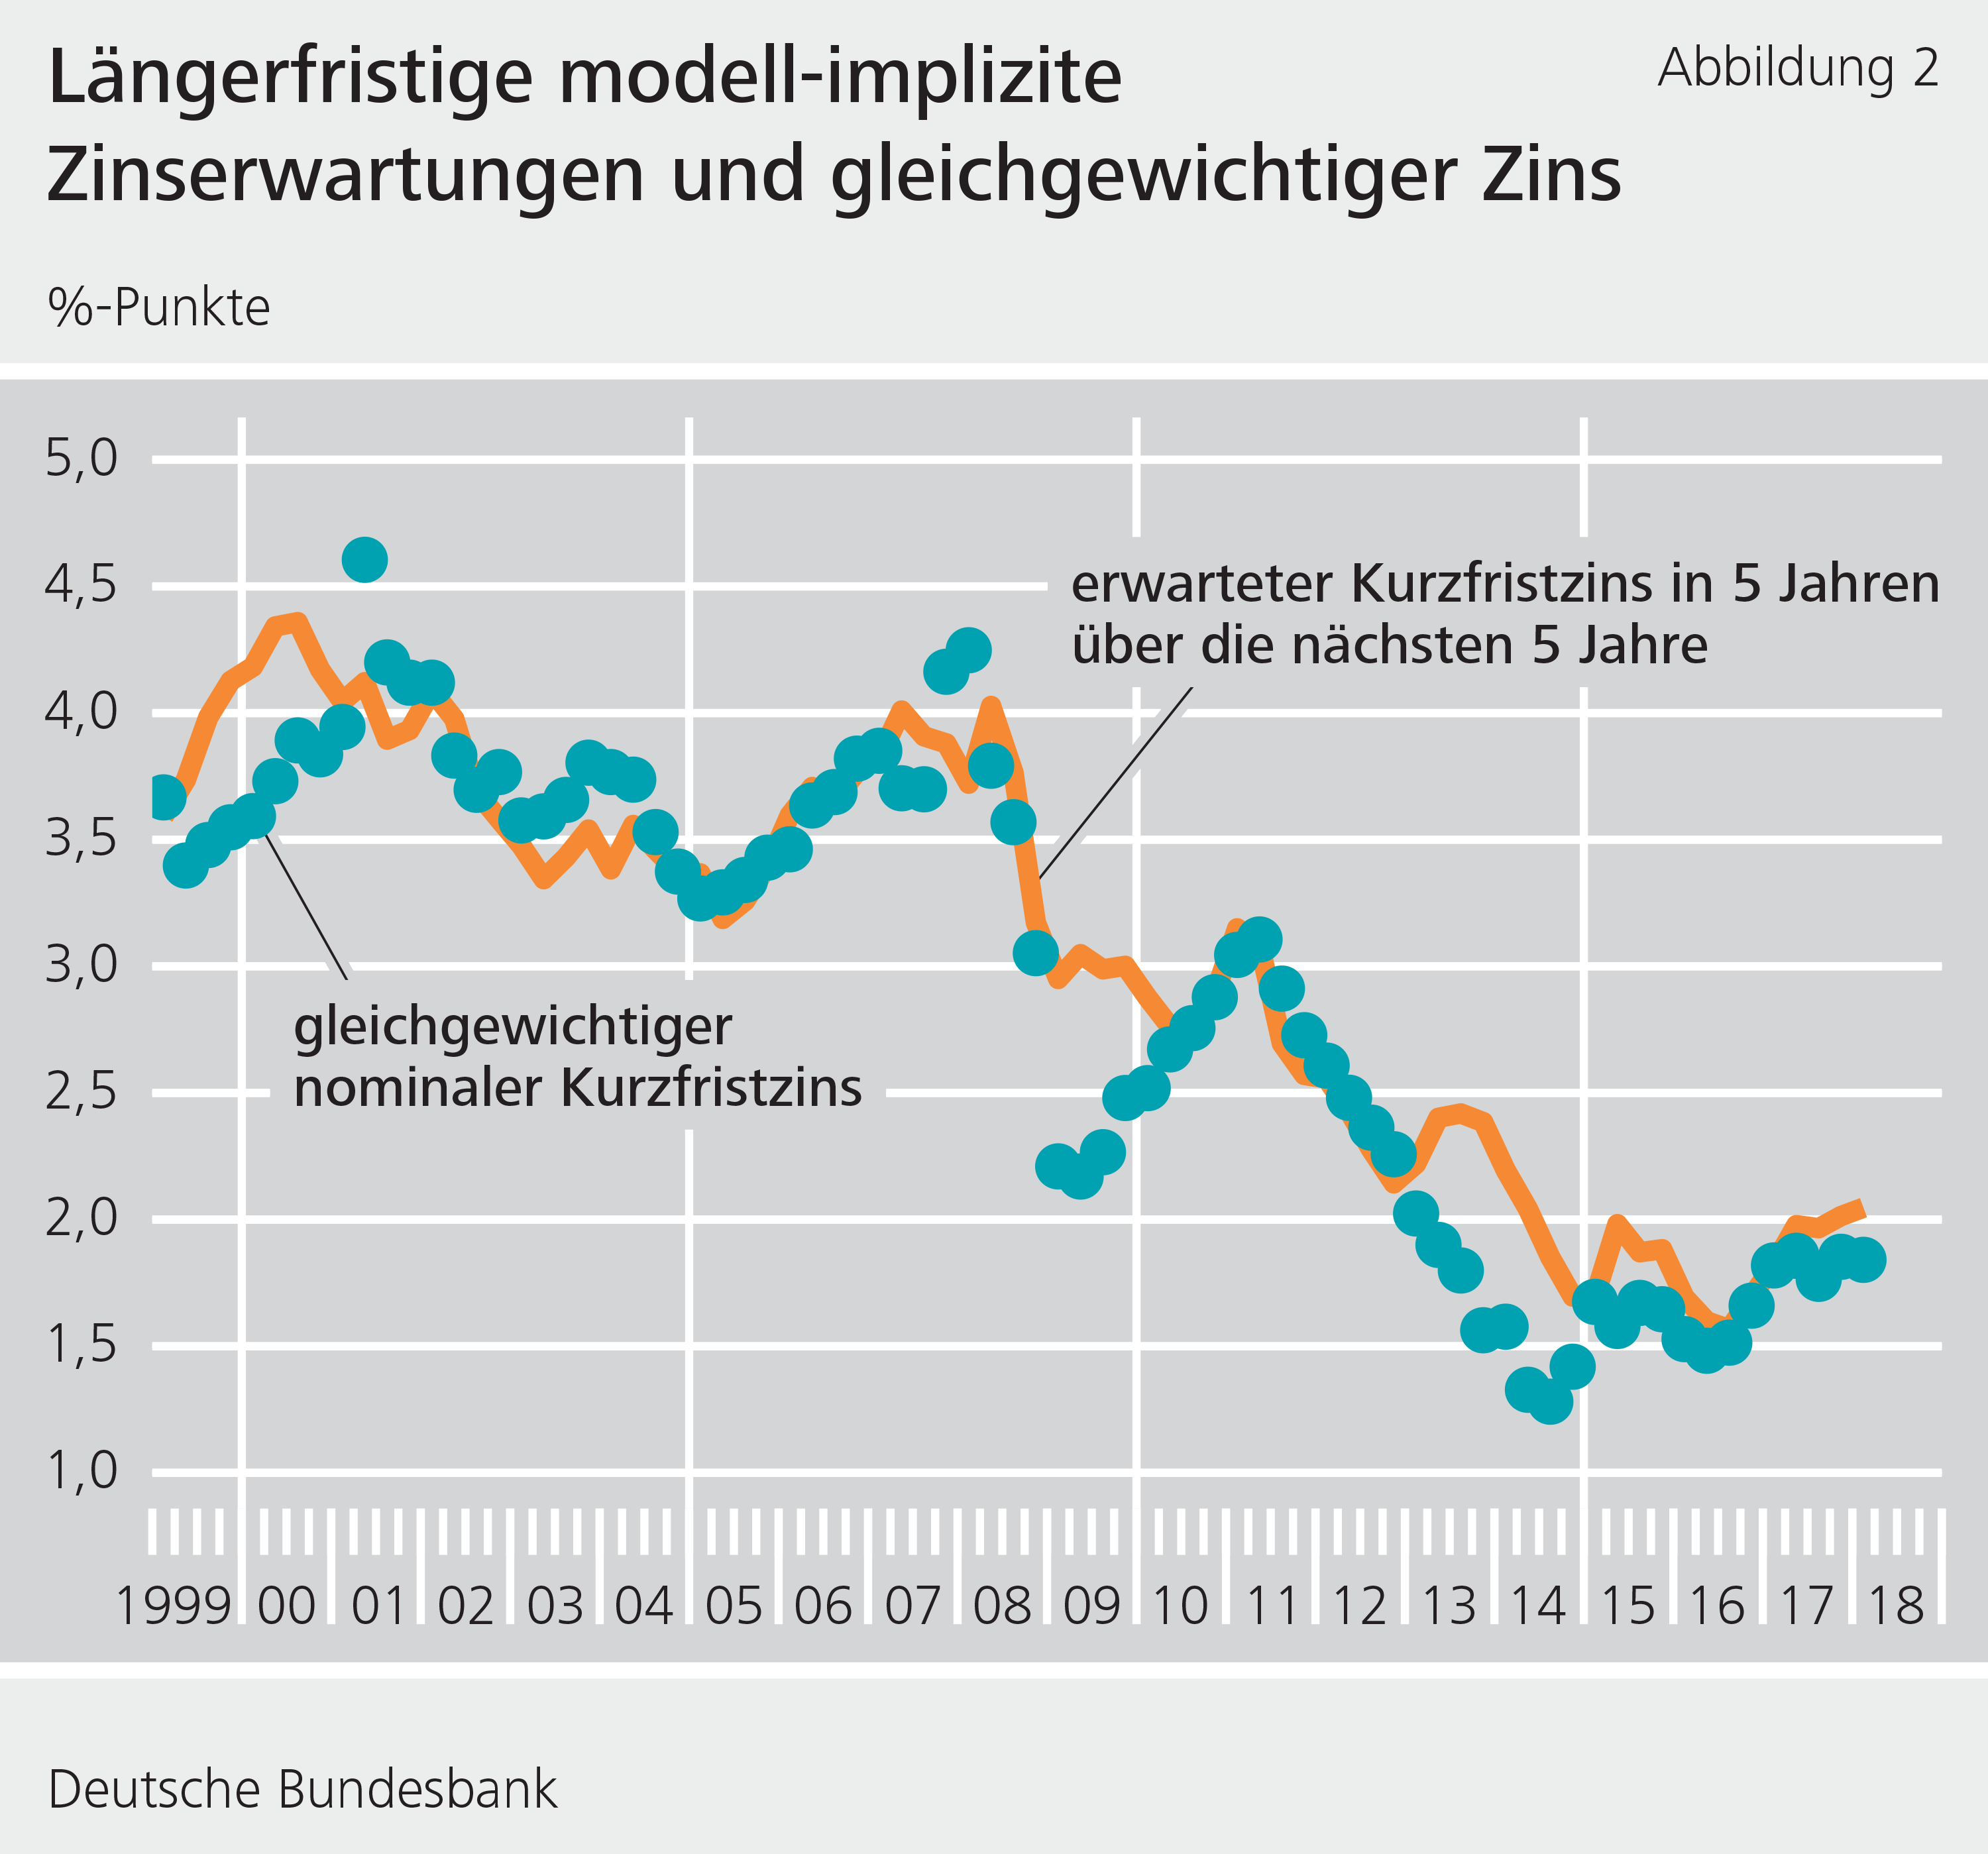 Abbildung 2: Längerfristige modell-implizite Zinserwartungen und gleichgewichtiger Zins